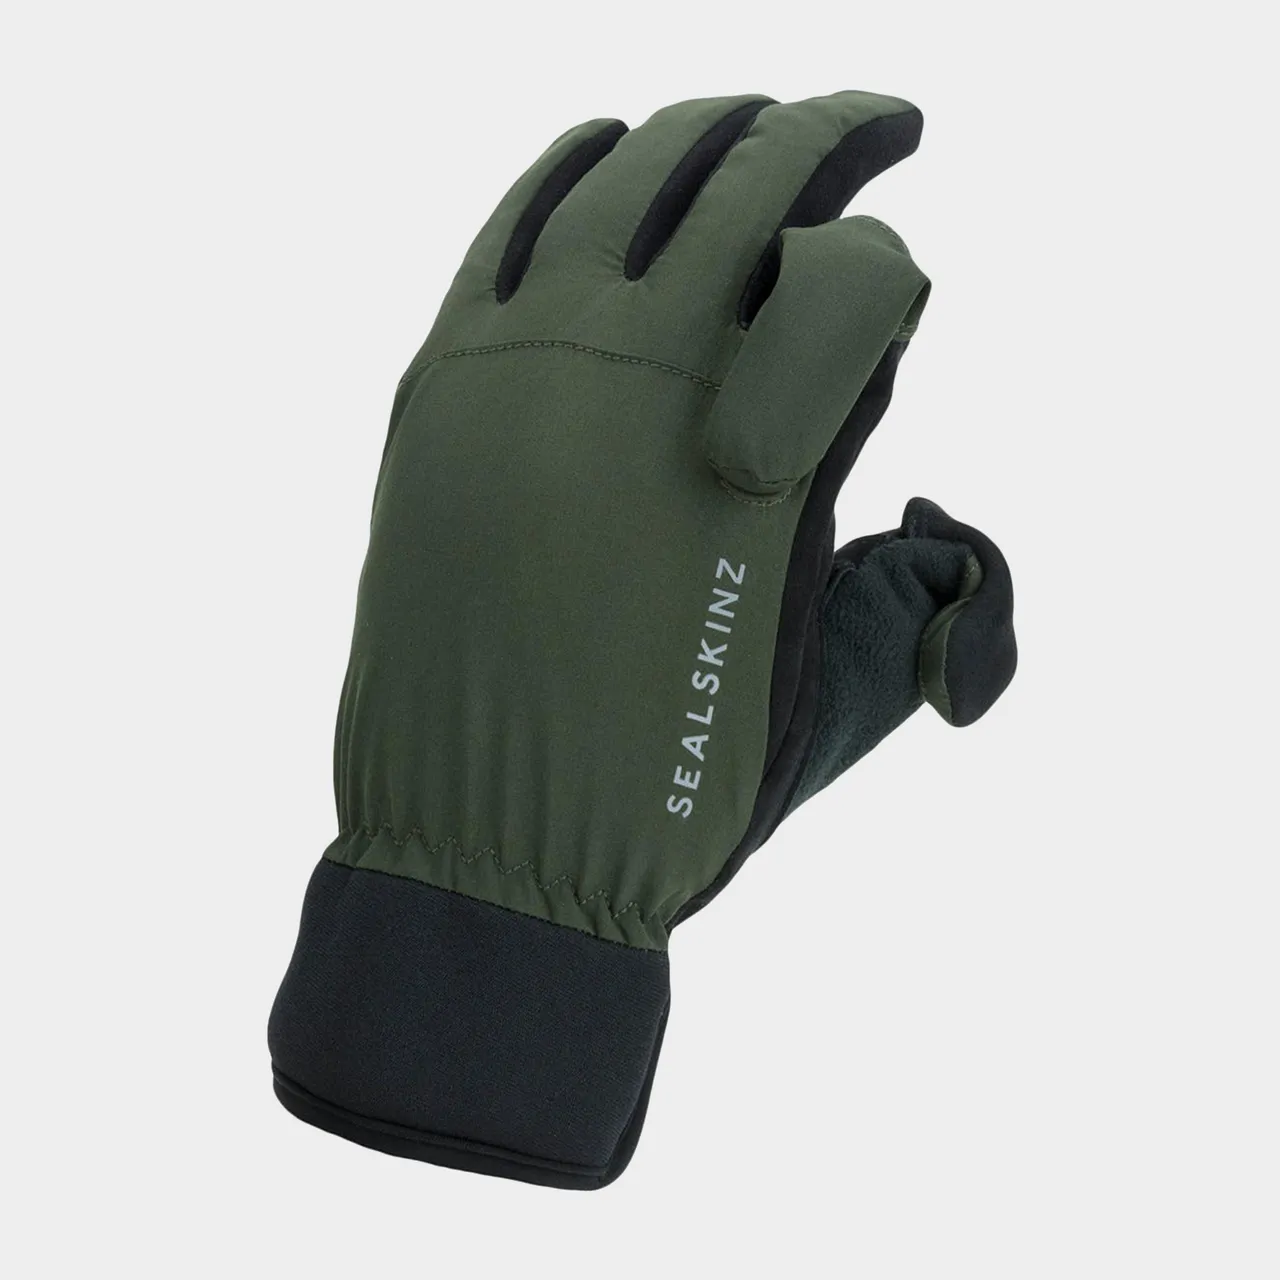 Waterproof All Weather Sporting Gloves, Black